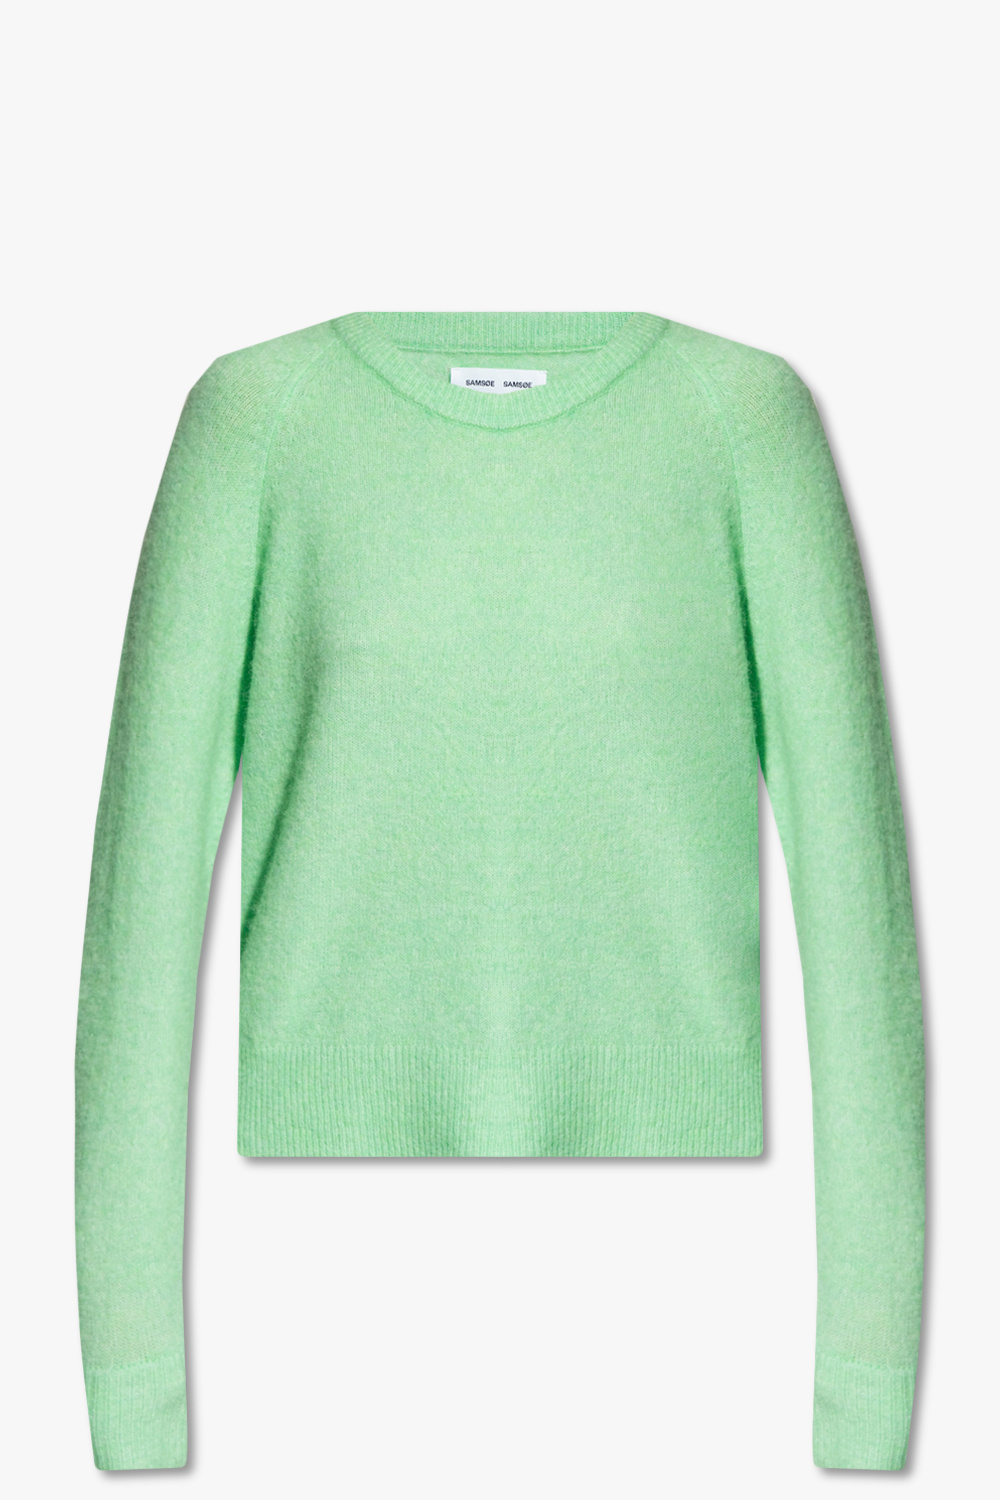 Samsøe Samsøe ‘Nor’ loose-fitting sweater